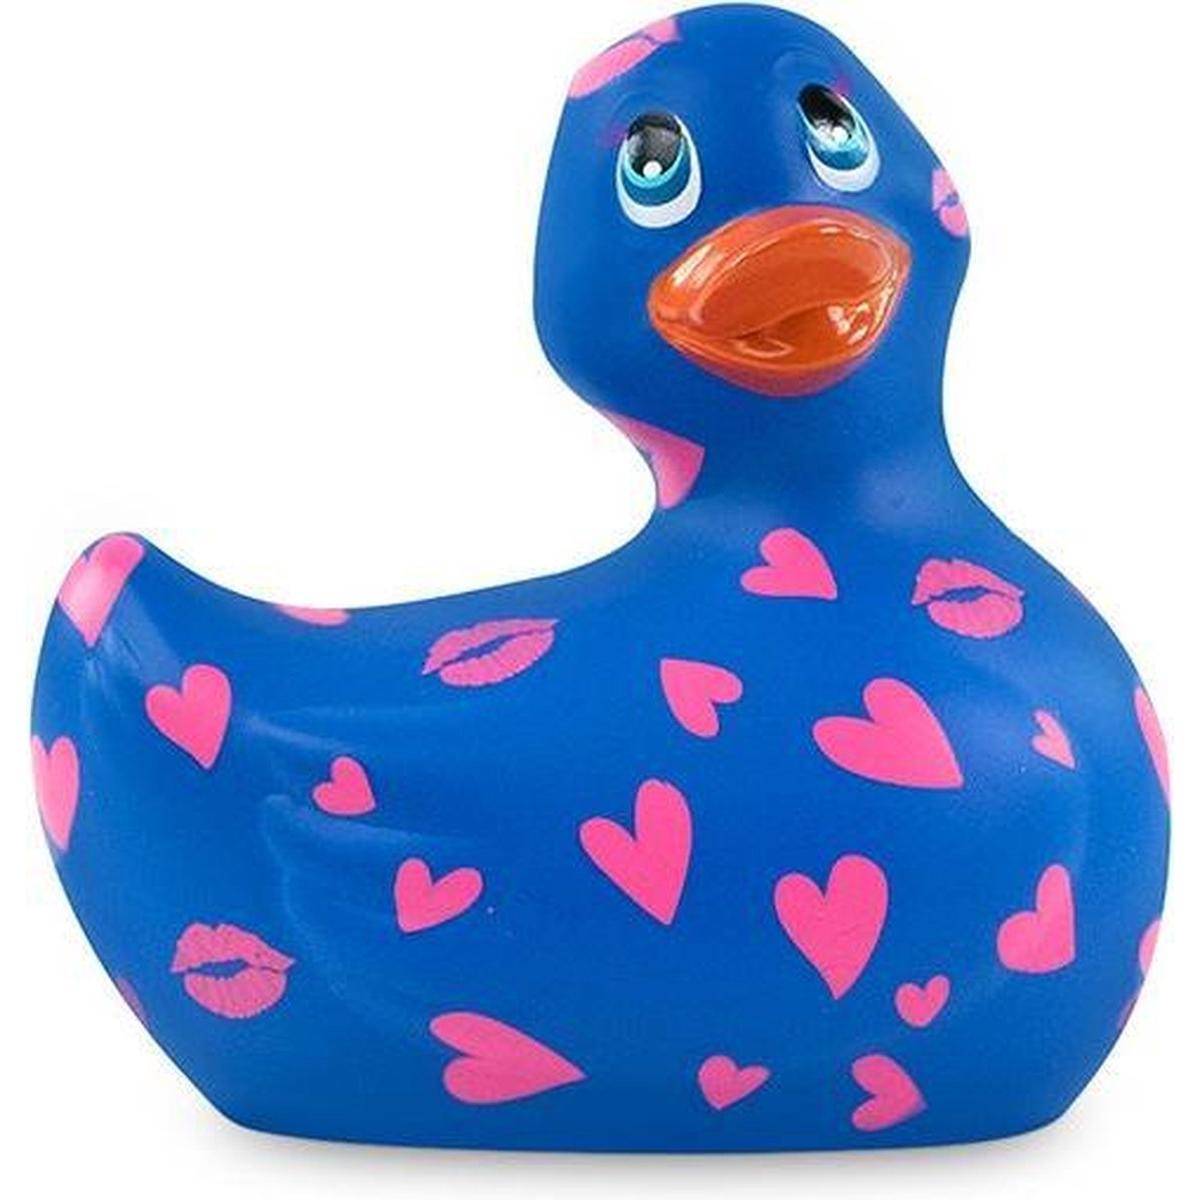 Вибратор-уточка Big Teaze Toys I Rub My Duckie 2.0, сине-фиолетовый E29014 (жен. вибратор) оптом